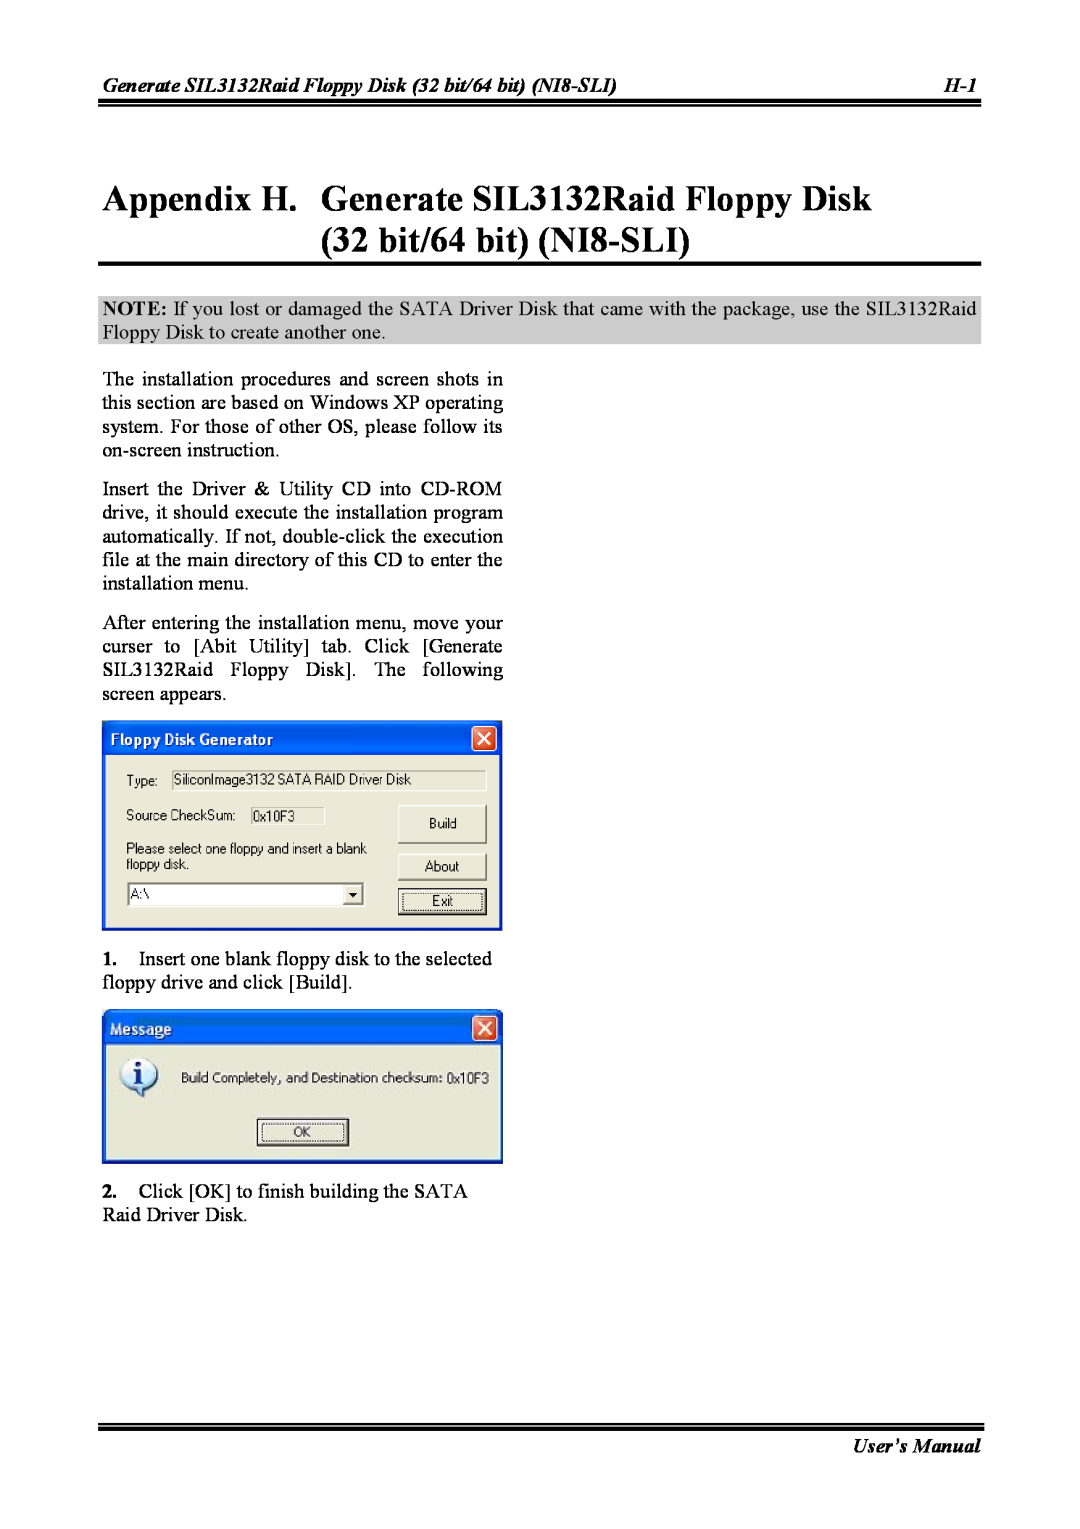 Abit NI8 SLI user manual Appendix H. Generate SIL3132Raid Floppy Disk 32 bit/64 bit NI8-SLI, User’s Manual 